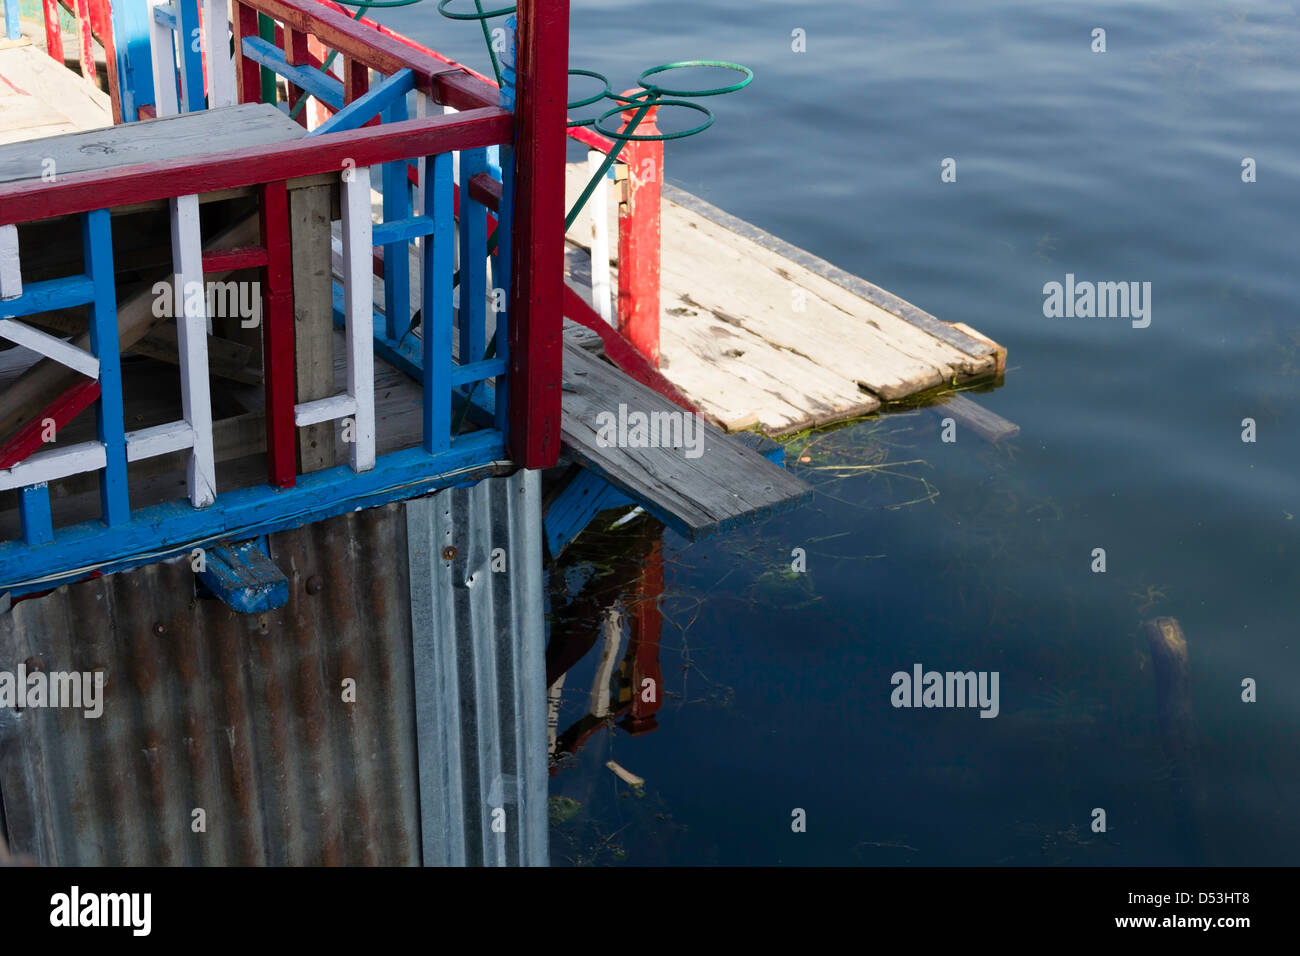 La parte anteriore di una casa galleggiante e le erbacce e d'acqua dal lago in Srinagar. La piattaforma è utilizzata per ottenere in shikaras. Foto Stock